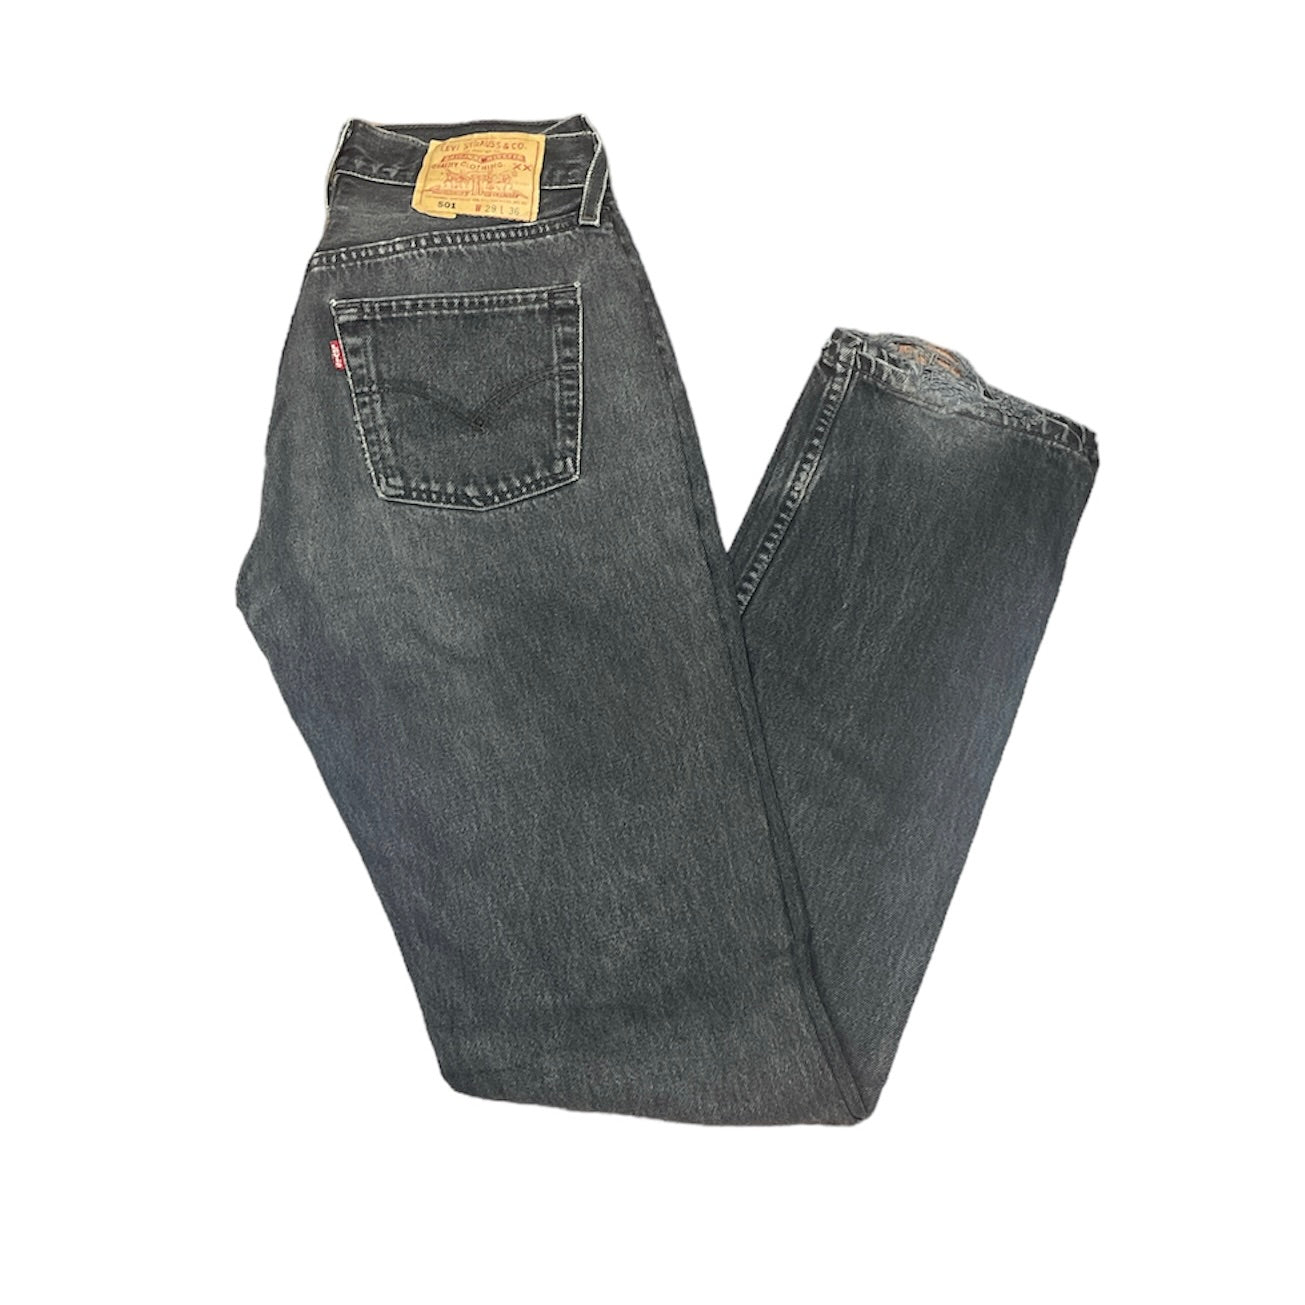 Vintage Levis 501 Black/Grey Jeans (W29/L36)